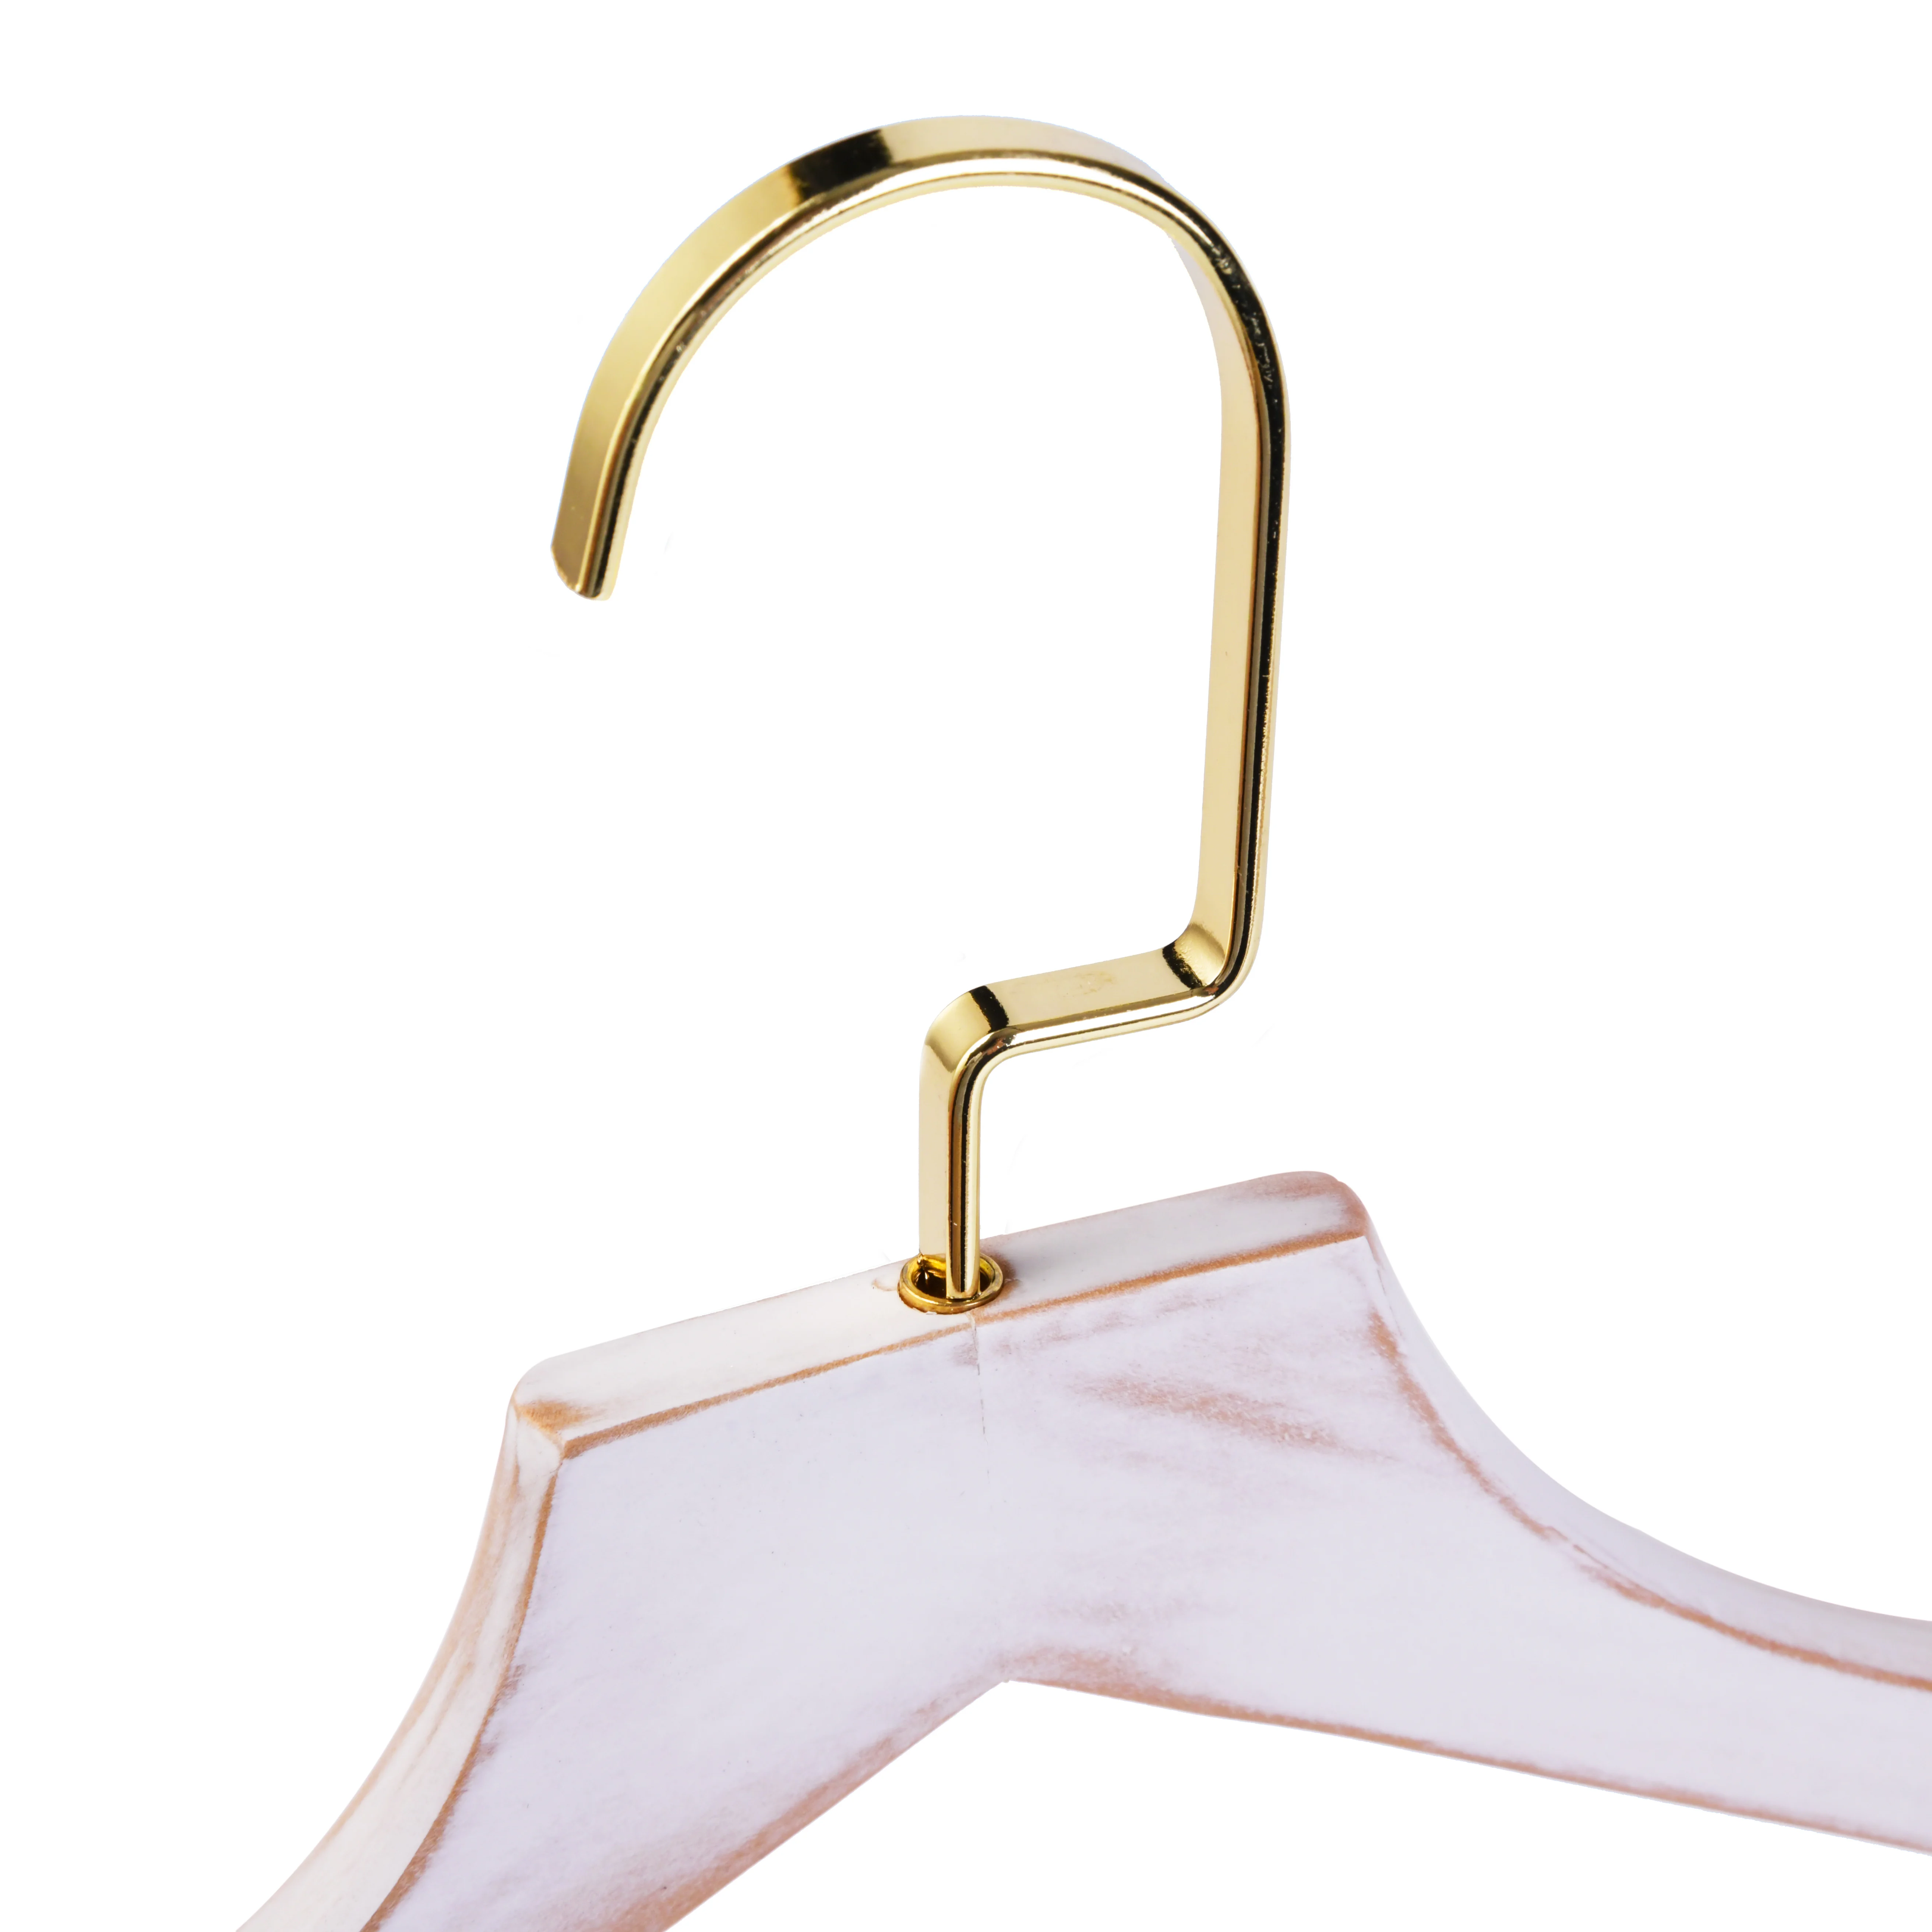  Hugely популярные золотые крючки Винтажные белые деревянные вешалки для одежды экономия места